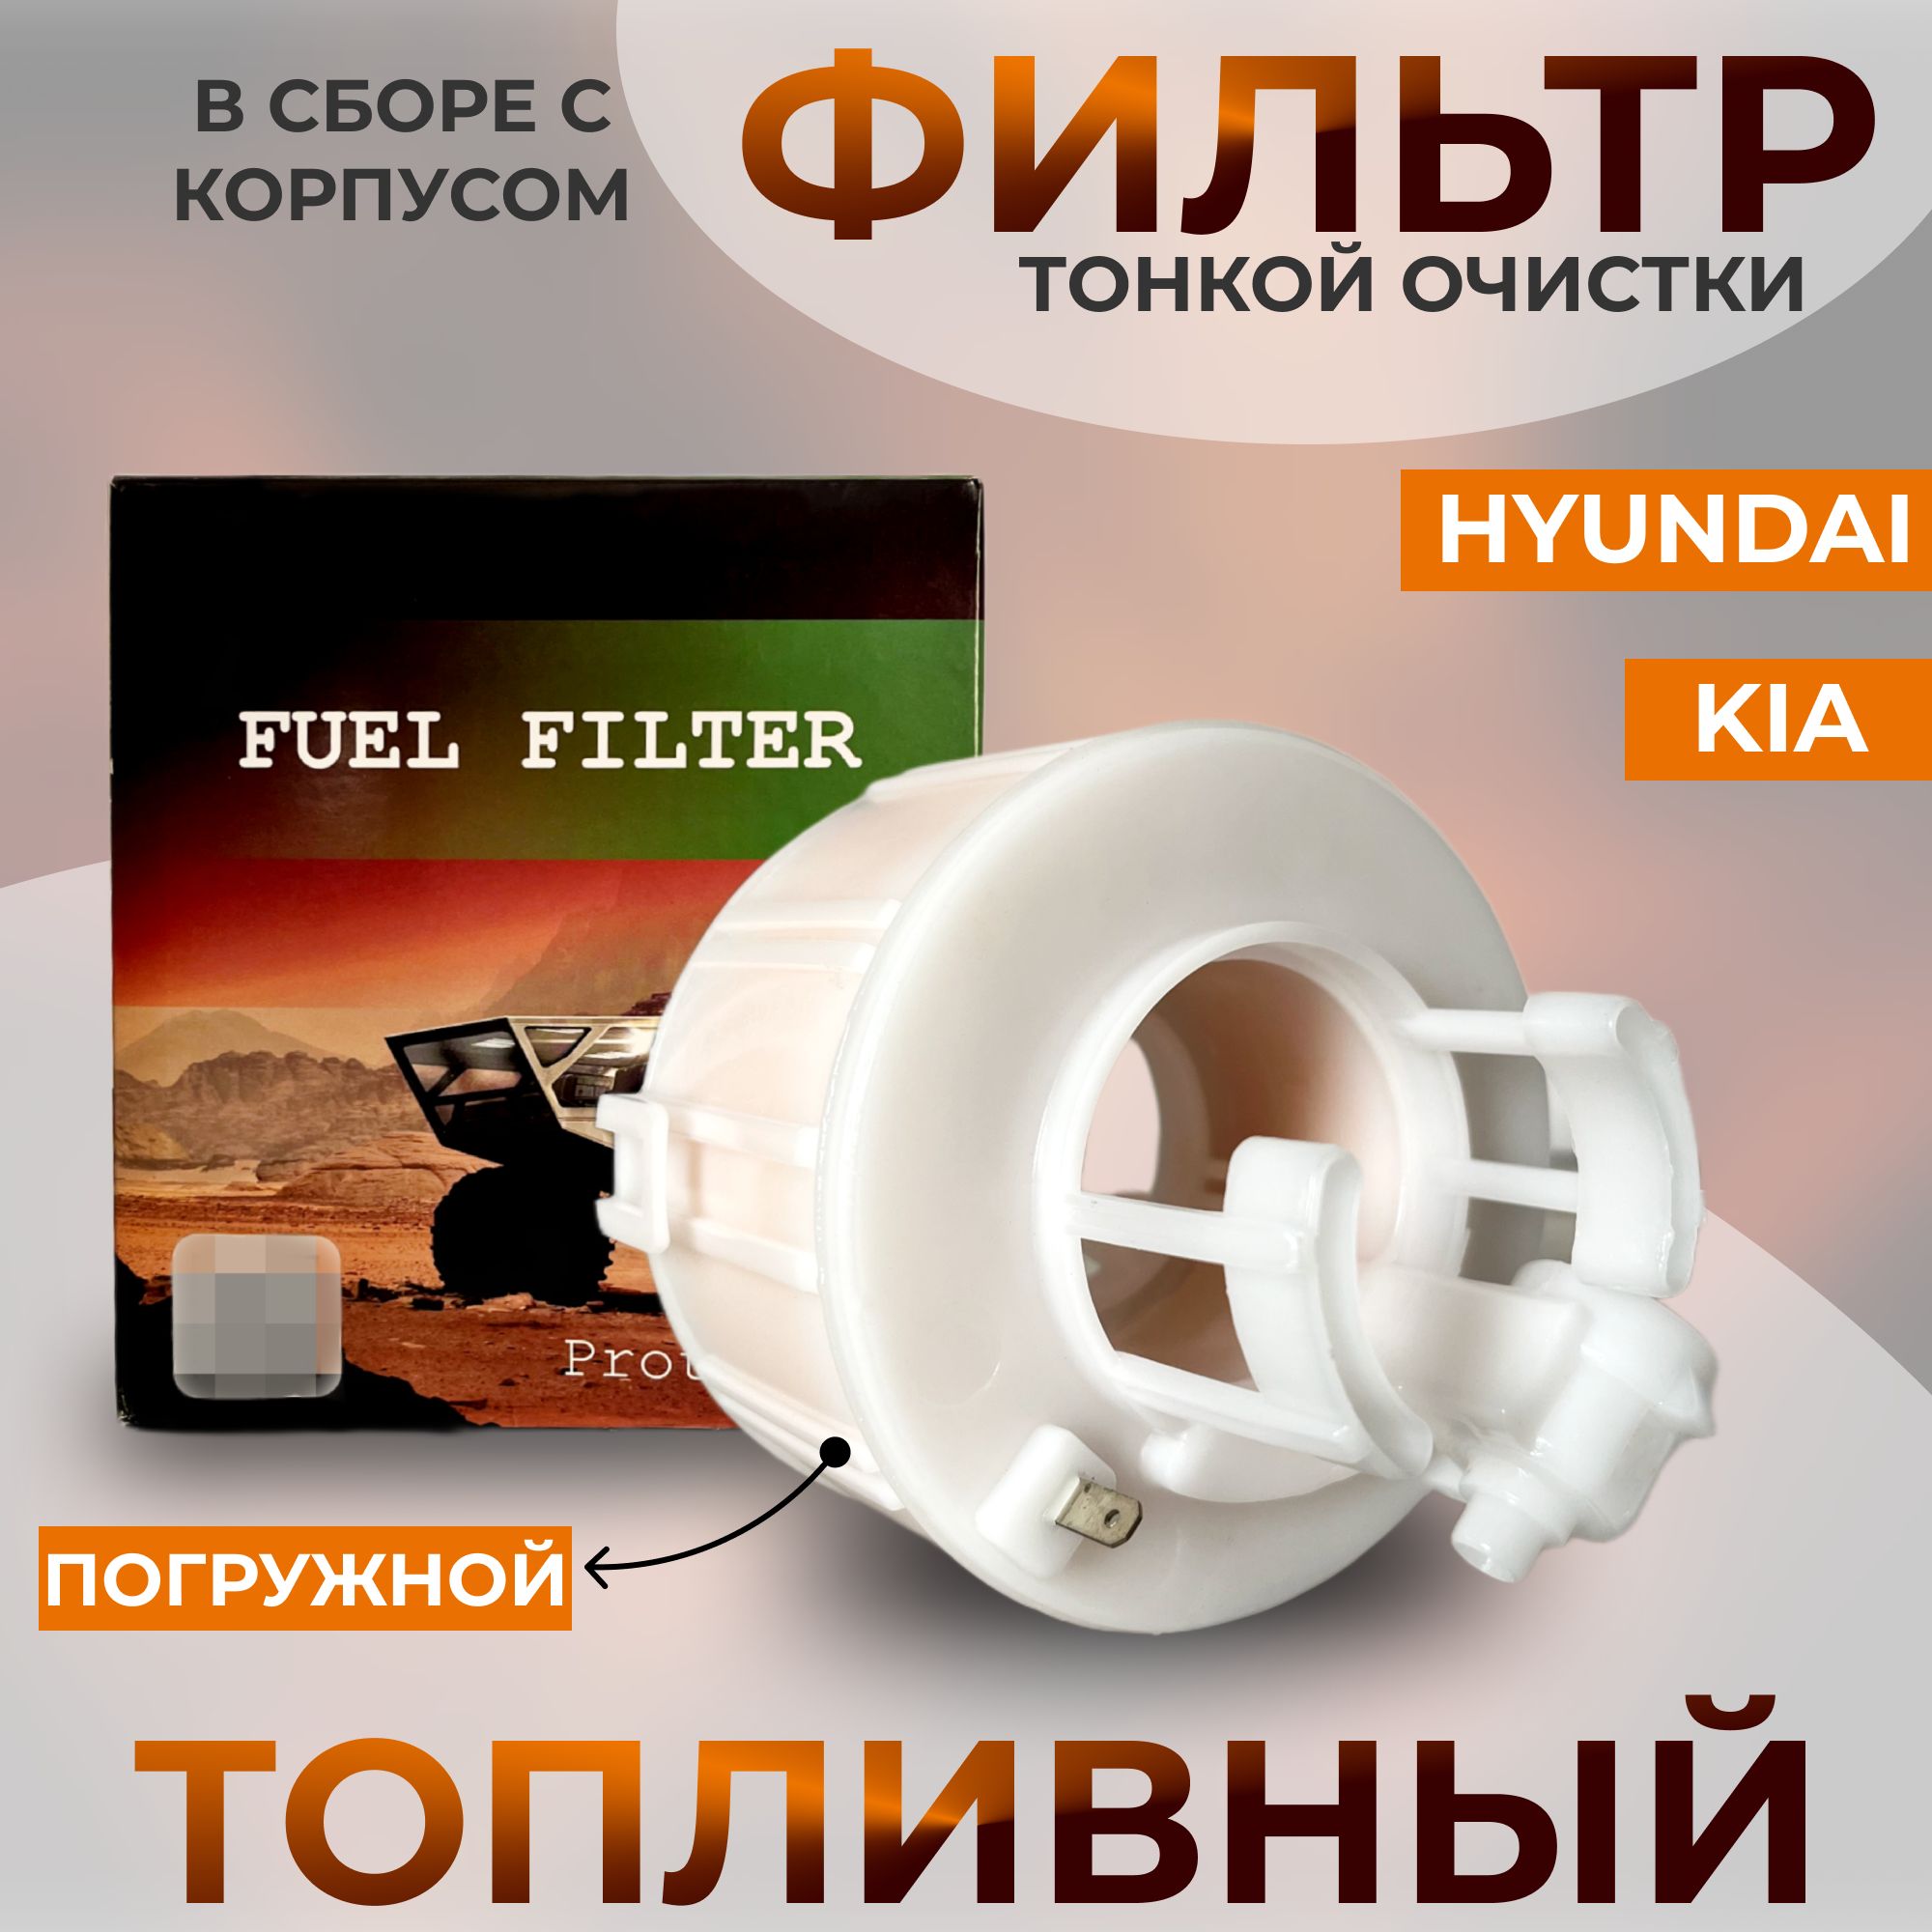 ФильтртопливныйтонкойочисткиAsinпогружной,для:KiaRioIII,HyundaiSolaris(2011-2017)